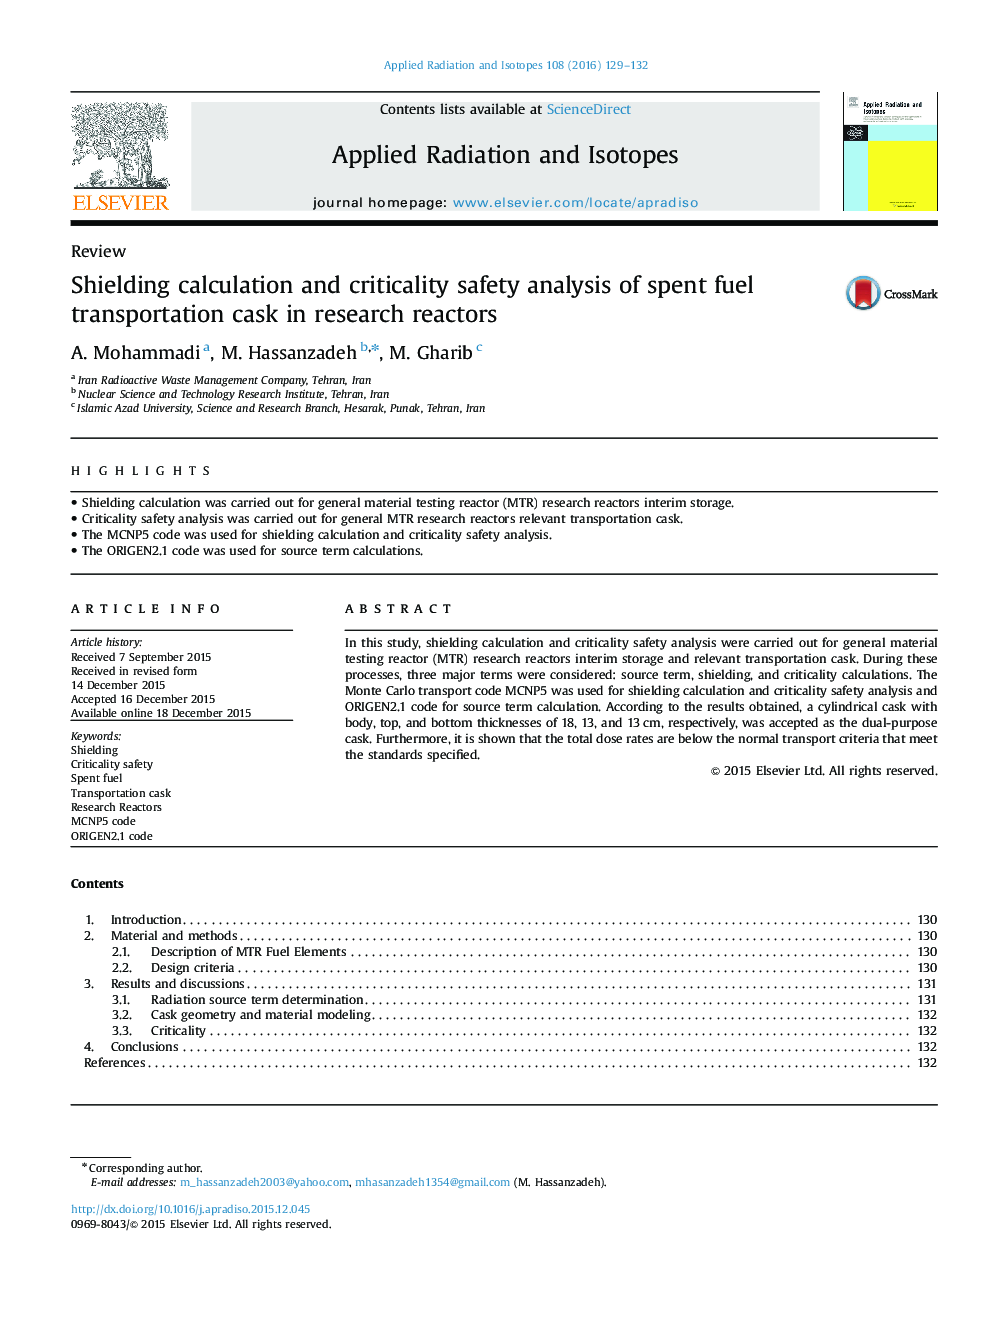 محاسبه محافظ و تحلیل ایمنی بحرانی بطری حمل و نقل سوخت در راکتورهای تحقیقاتی 